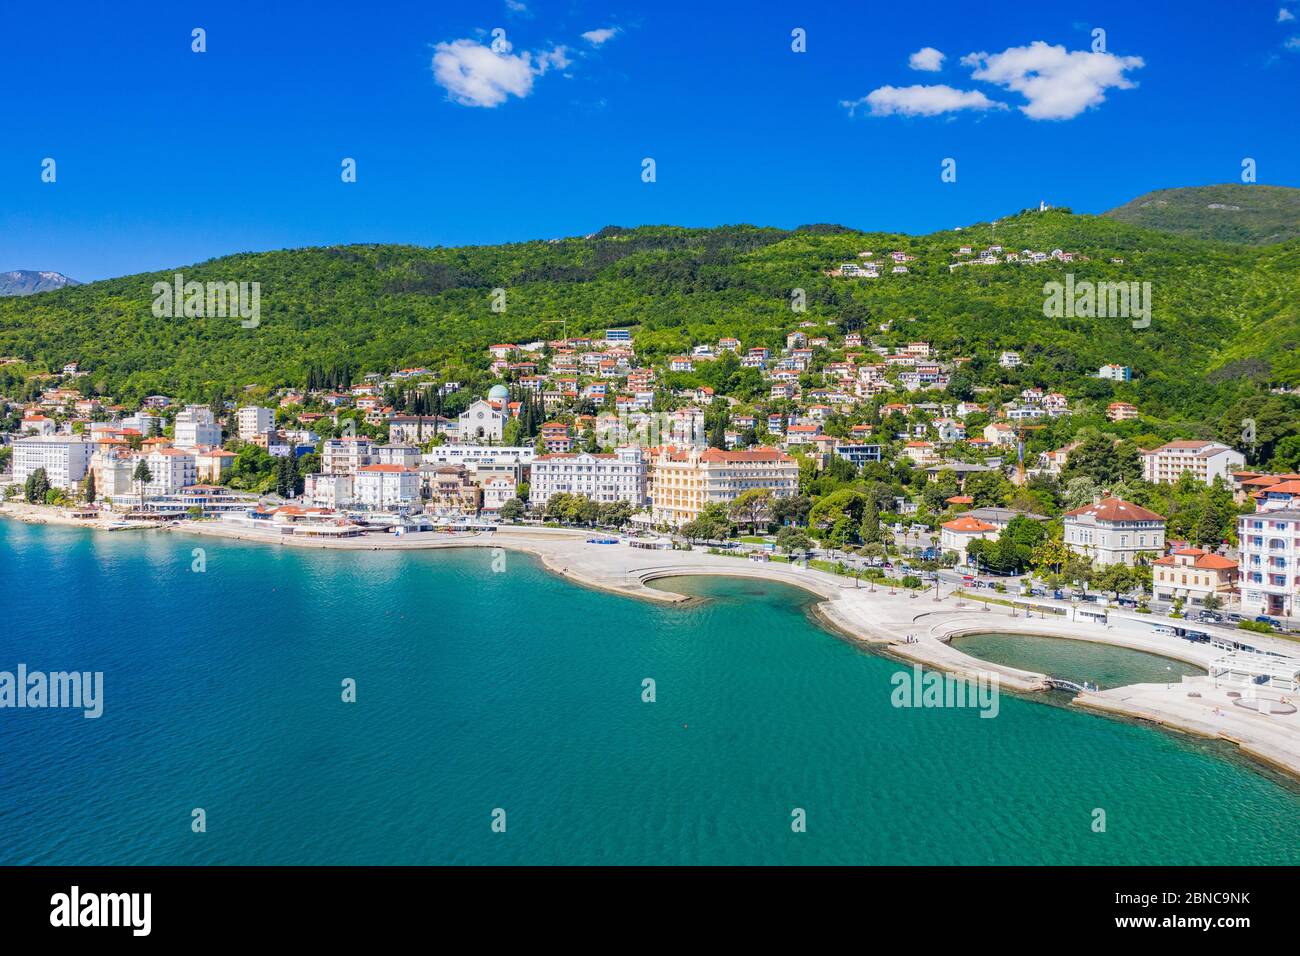 Croatie, ville d'Opatija, station touristique populaire, vue panoramique aérienne de la belle côte de Kvarner Banque D'Images